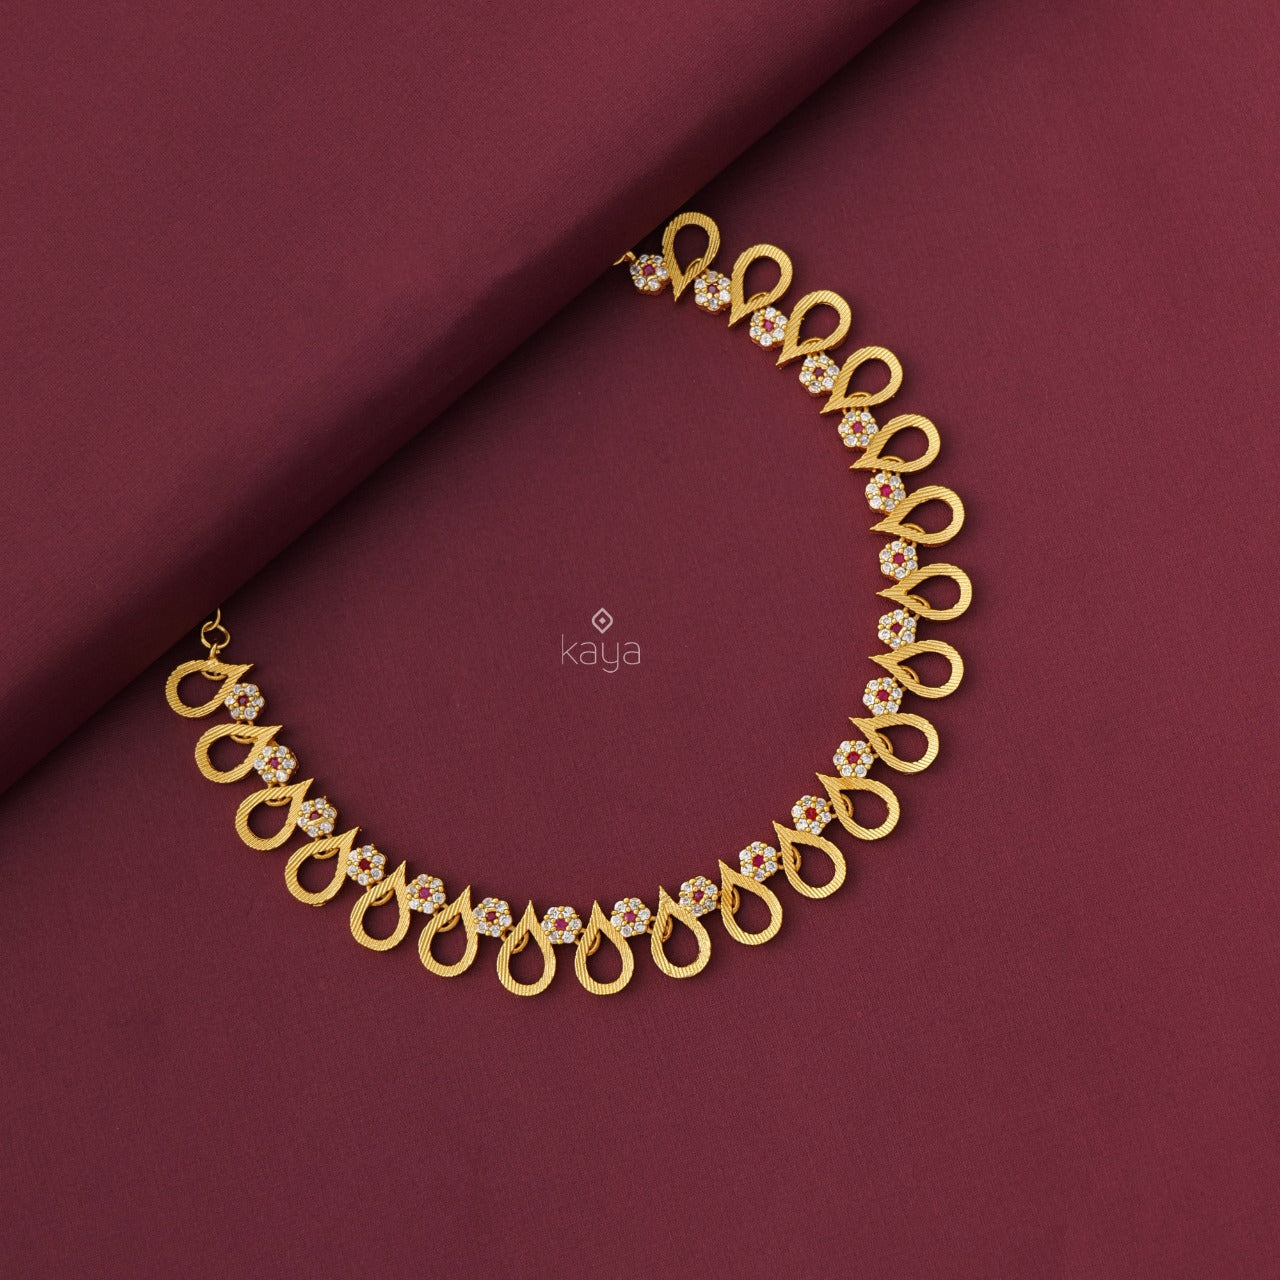 Tamar - Premium Necklace (color option)